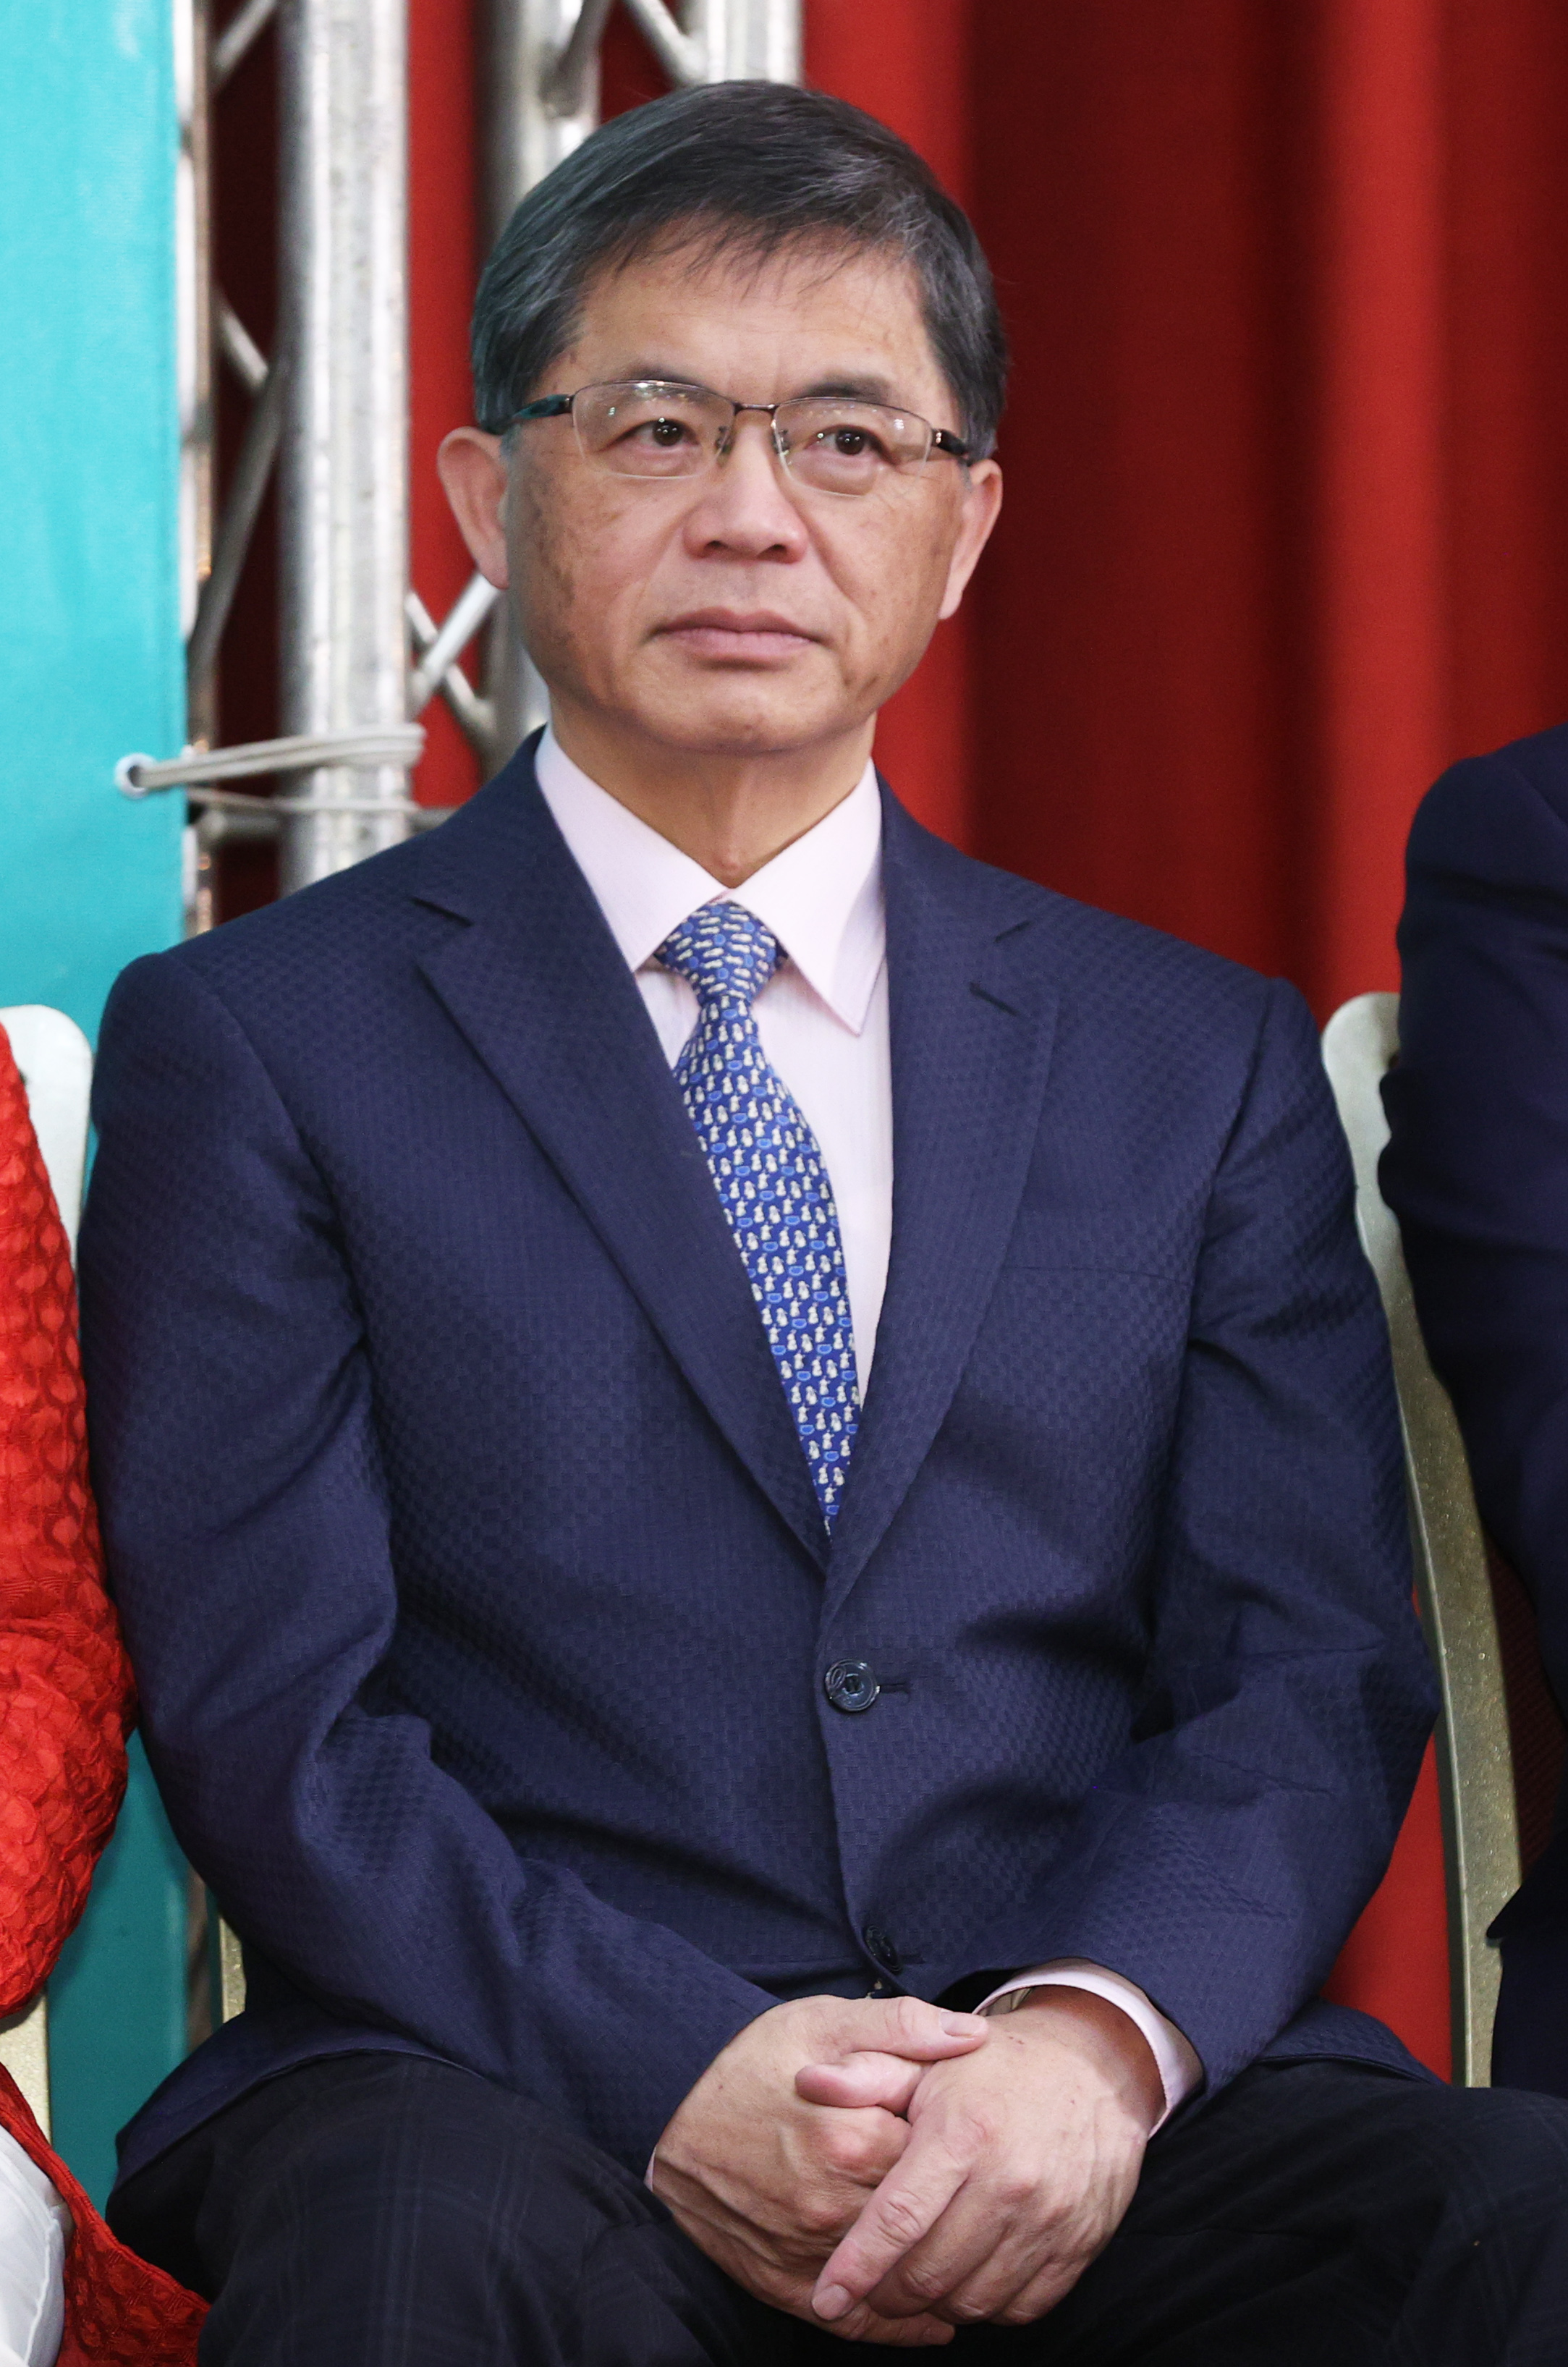 行政院秘书长李孟谚将接任交通部长。记者潘俊宏／摄影